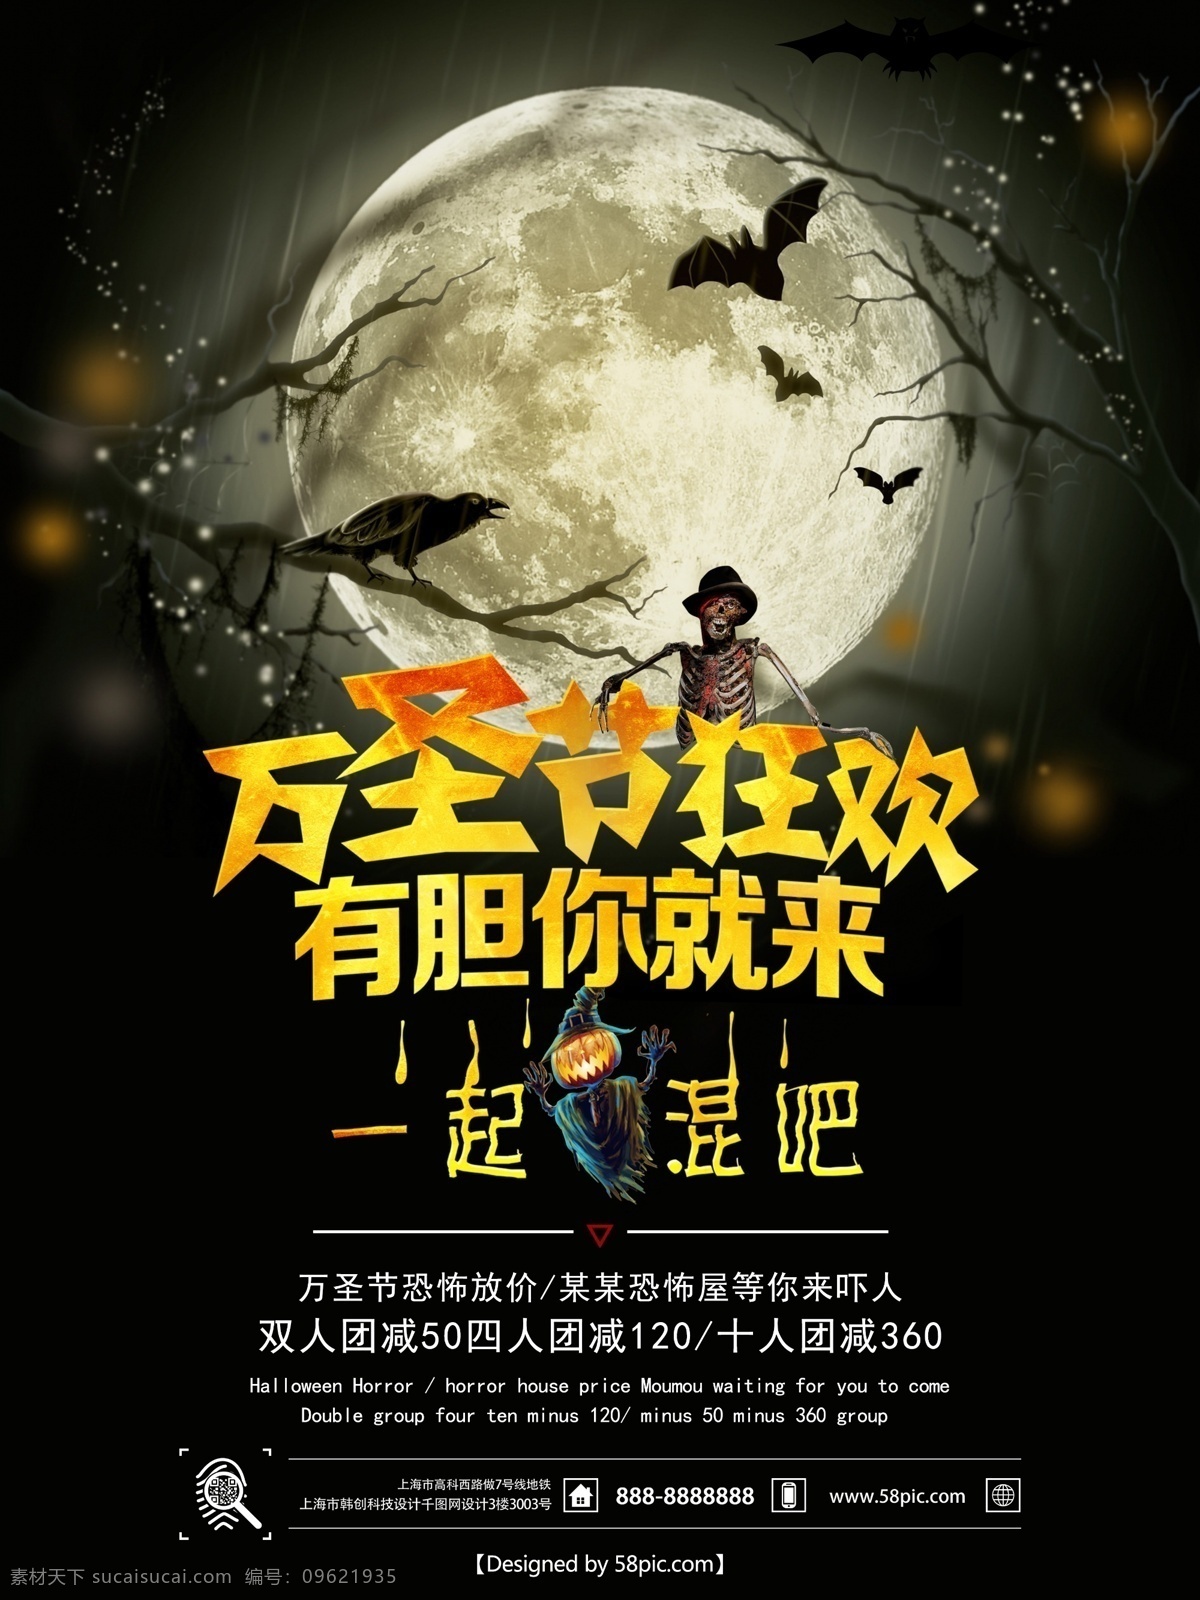 万圣 狂欢节 恐怖 密室 促销 宣传海报 万圣节 万圣狂欢节 骷髅 蝙蝠 促销宣传